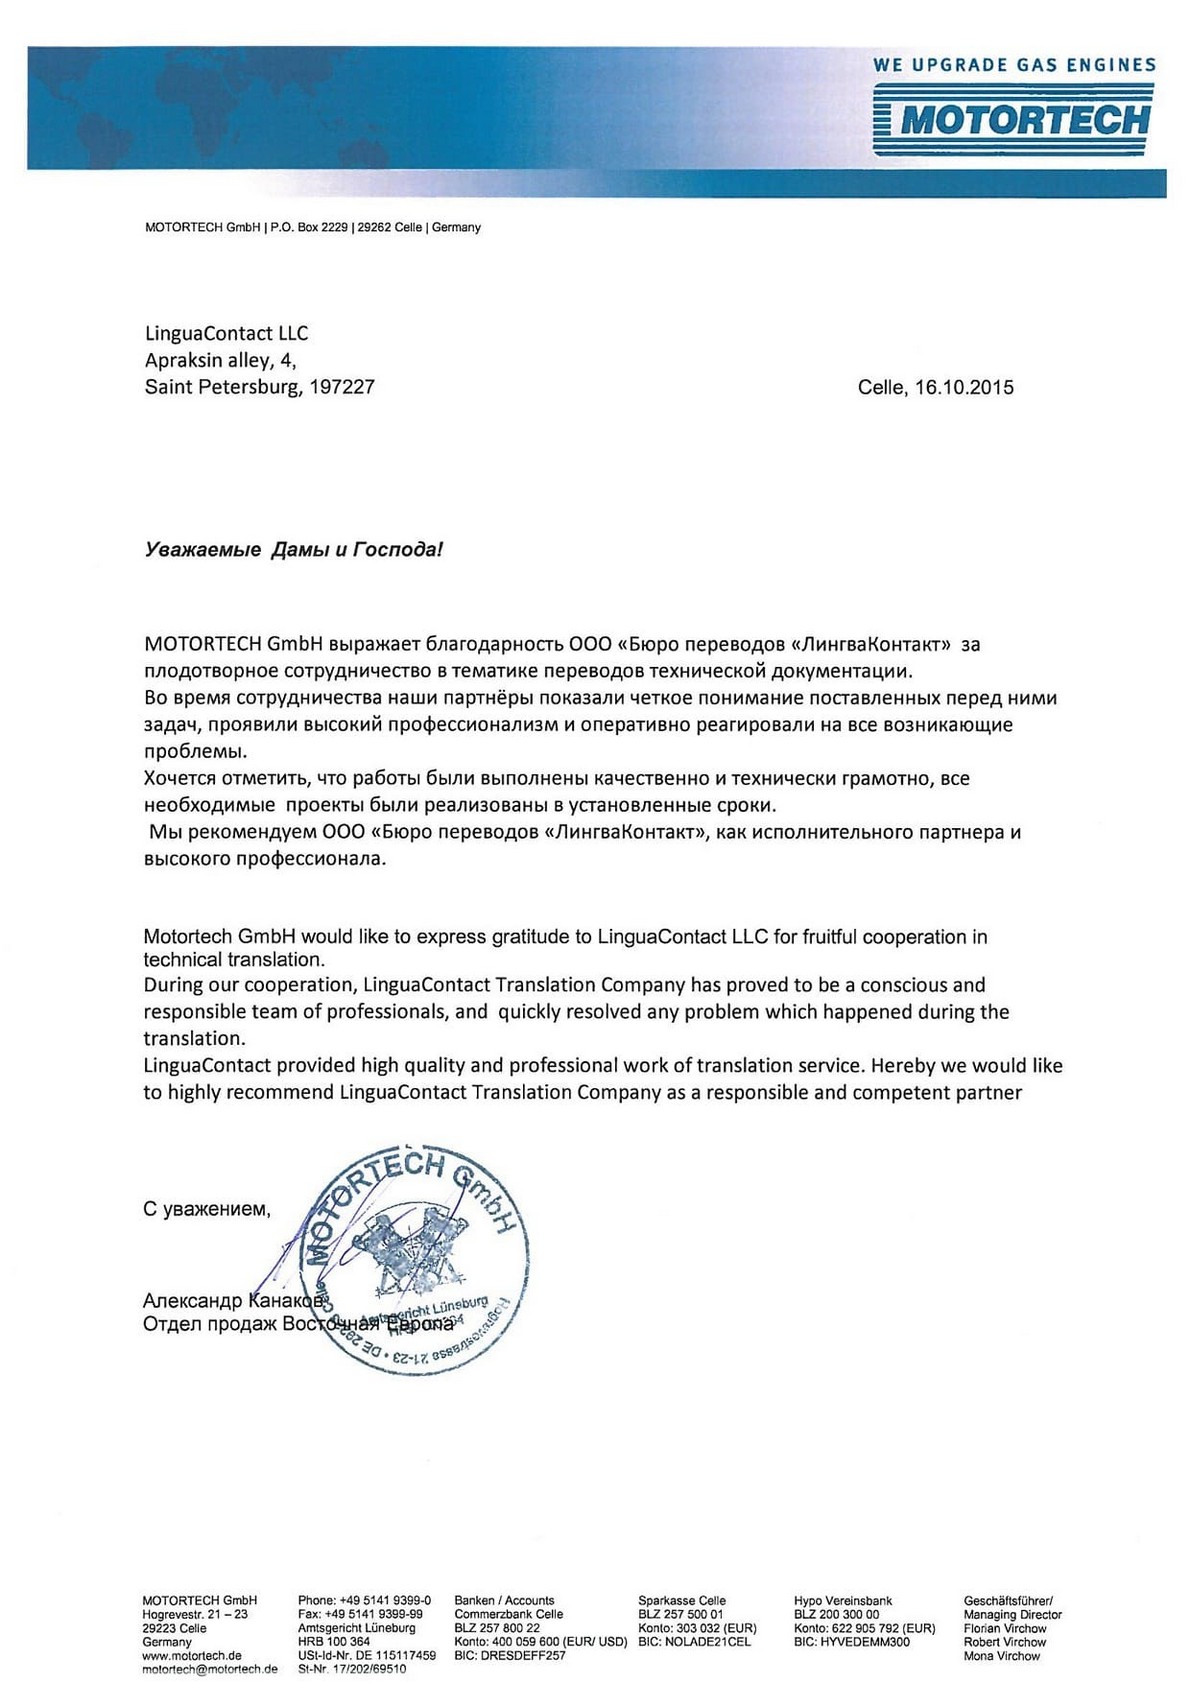 Рекомендательное письмо MOTORTECH GmbH